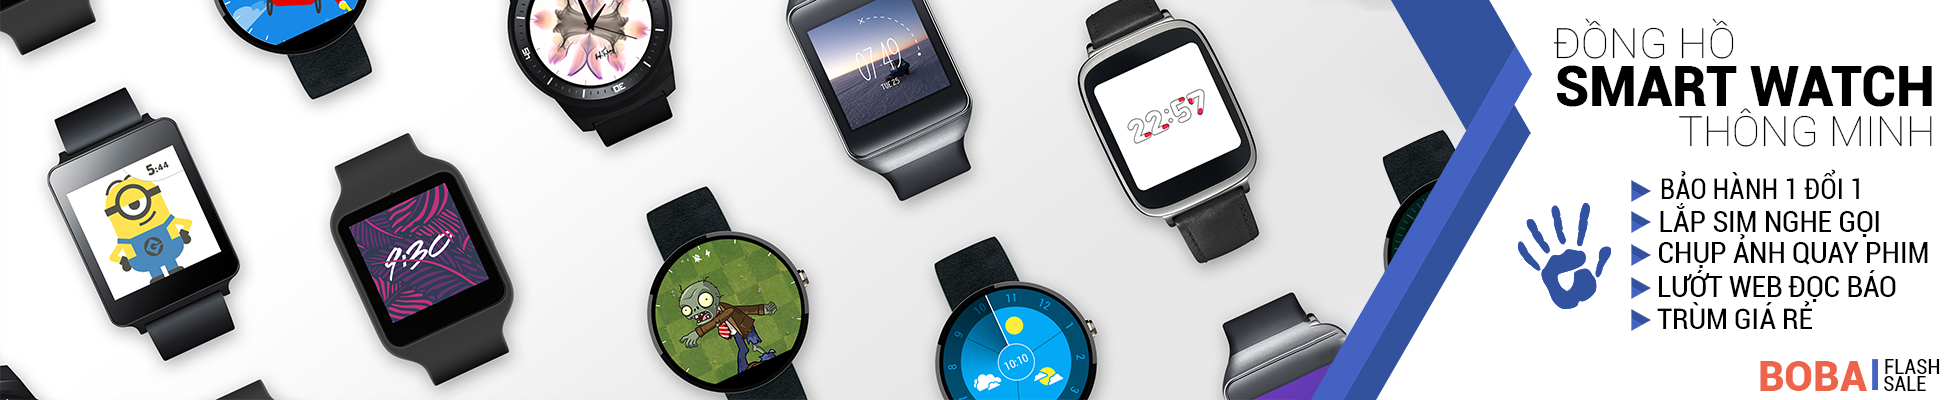 Mua đồng hồ smartwatch giá rẻ chất lượng, bảo hành chính hãng 1 đổi 1 tại Tp.HCM